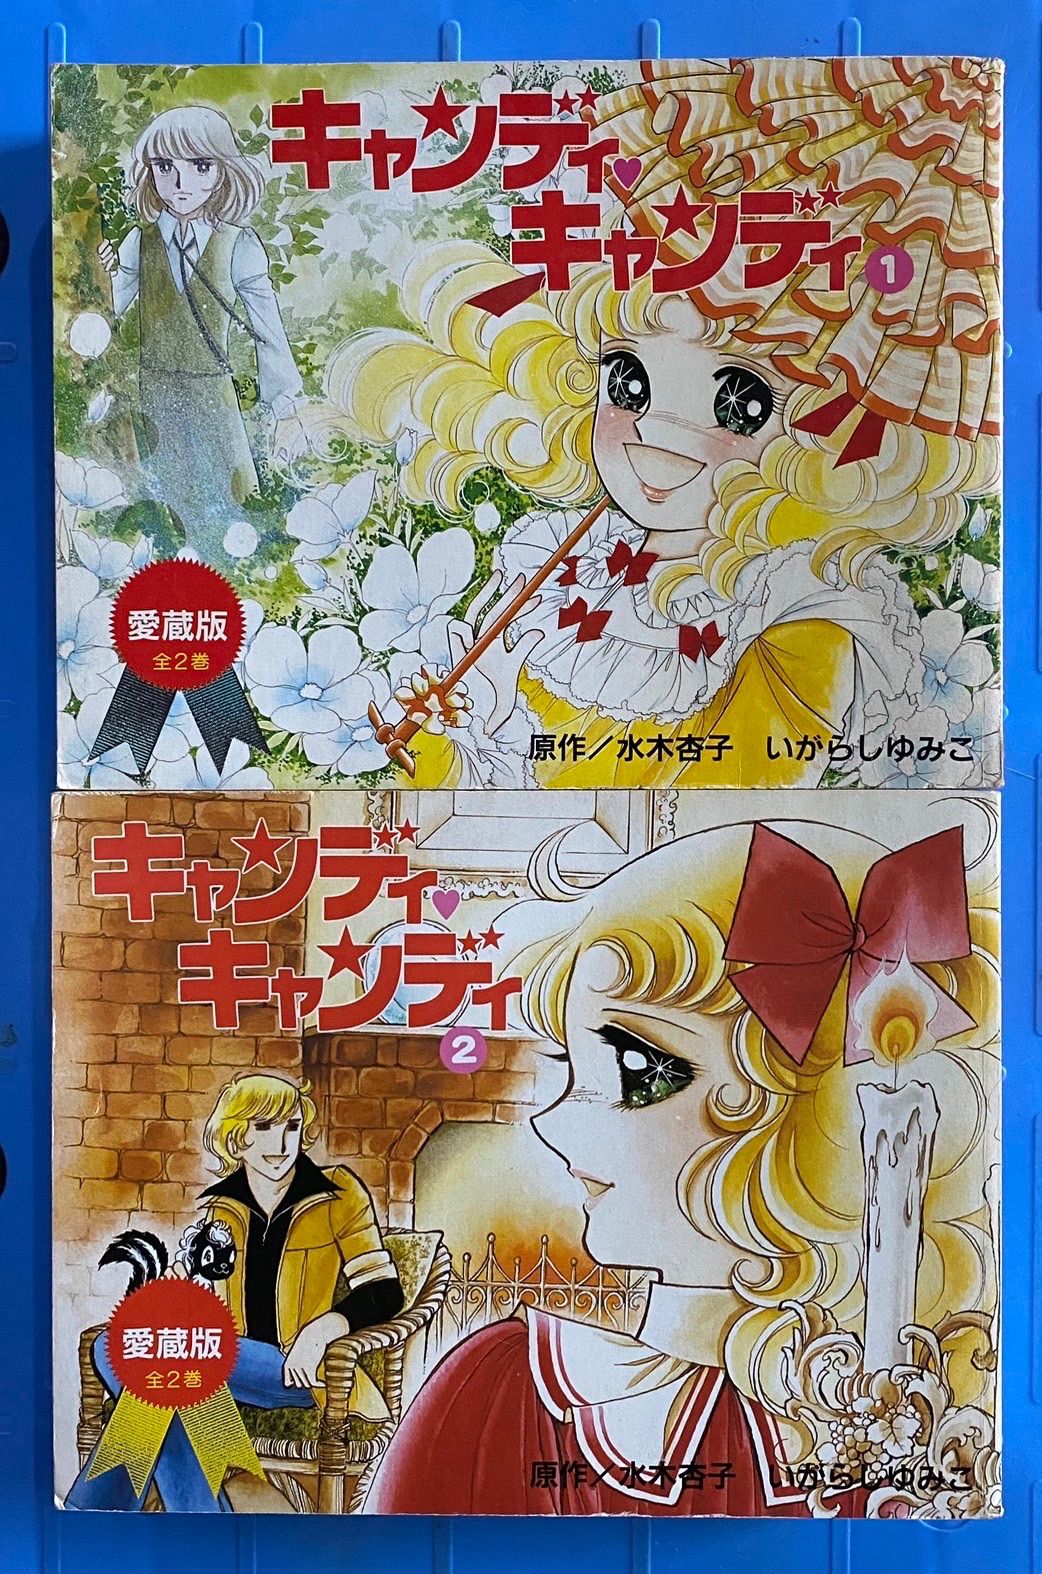 キャンディ・キャンディ 愛蔵版 全2巻セット いがらしゆみこ - メルカリ